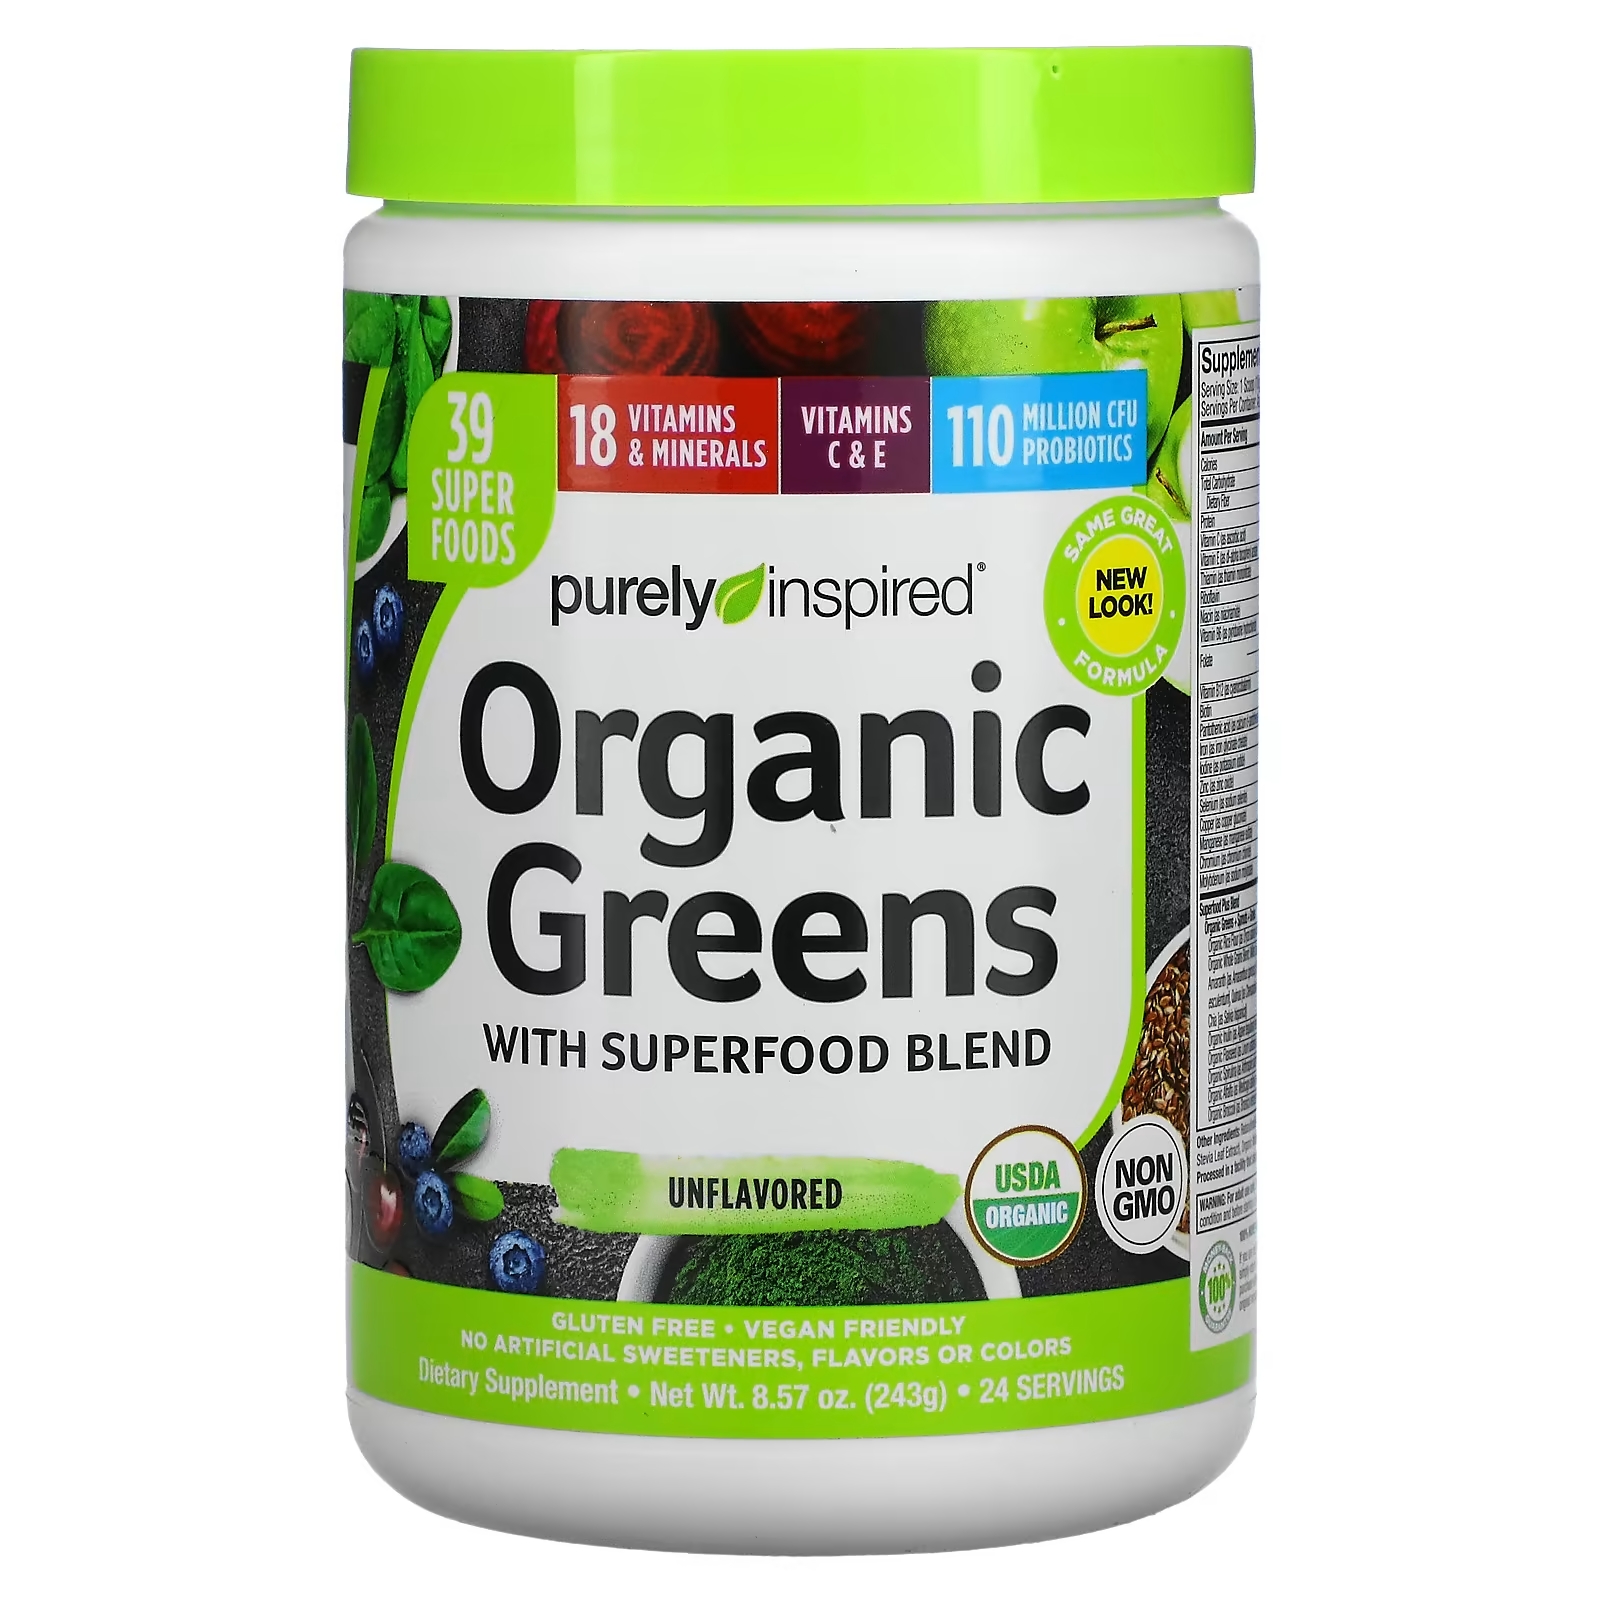 Смесь с Органической Зеленью и Суперфудами Purely Inspired purely inspired очищающее средство с пробиотиком 60 капсул